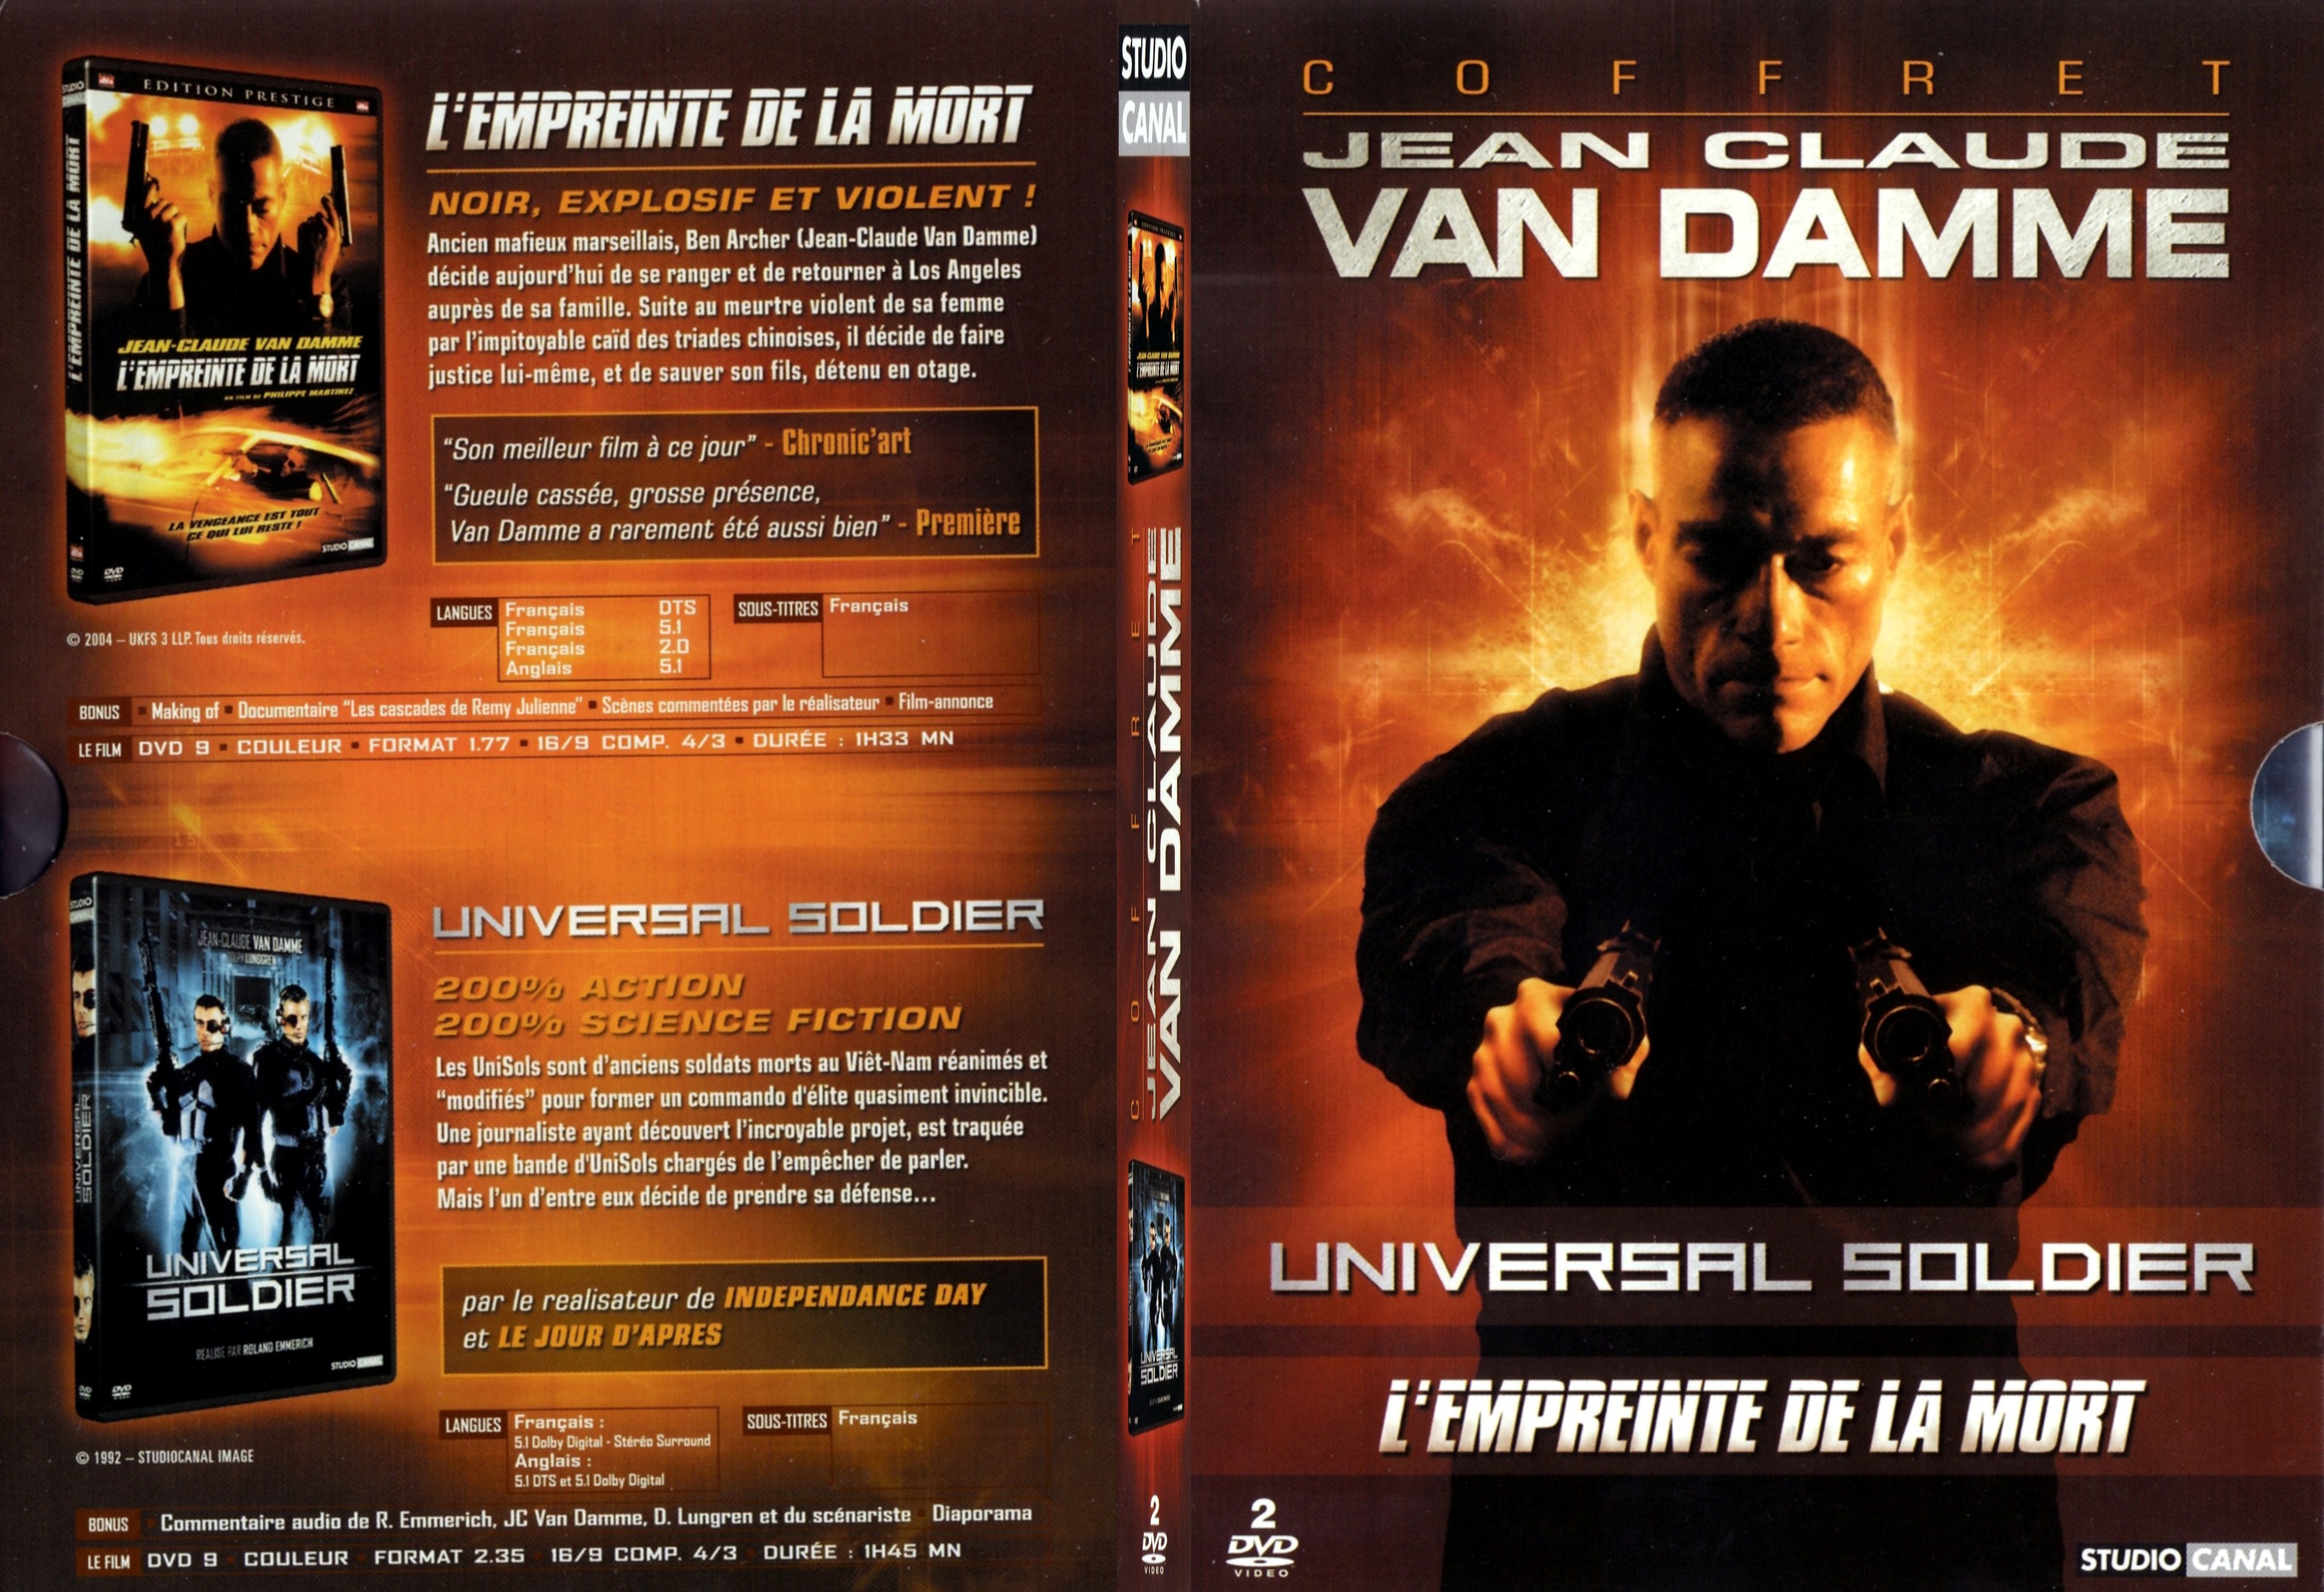 Jaquette DVD Universal soldier + L